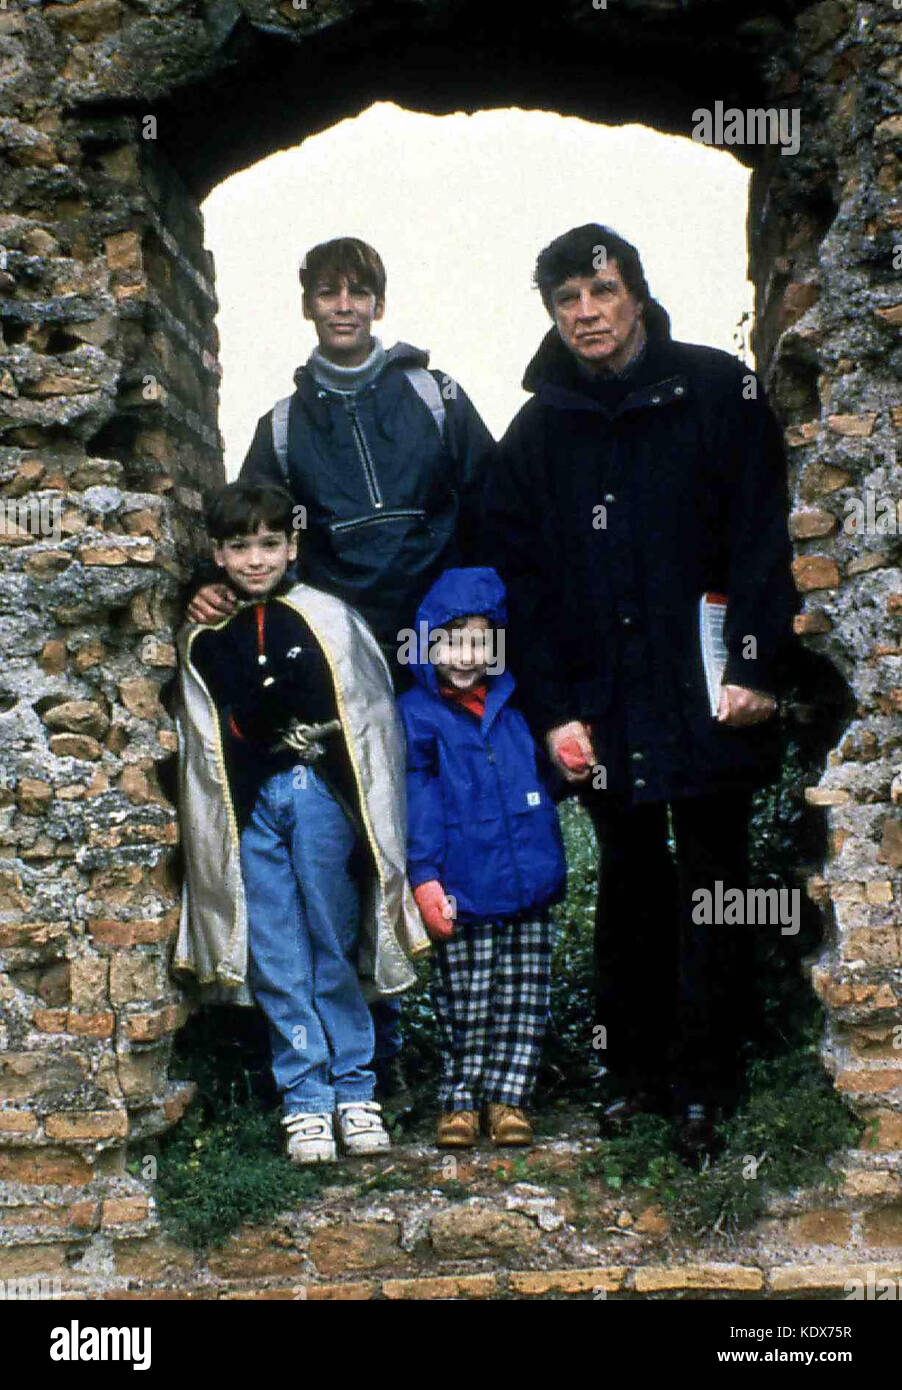 Nicholas´Gift aka: Nicholas - Ein Kinderherz lebt weiter, Italy/USA,1998, Regie: Robert Markowitz, Darsteller: Jamie Lee Curtis, Alan Bates, Stock Photo